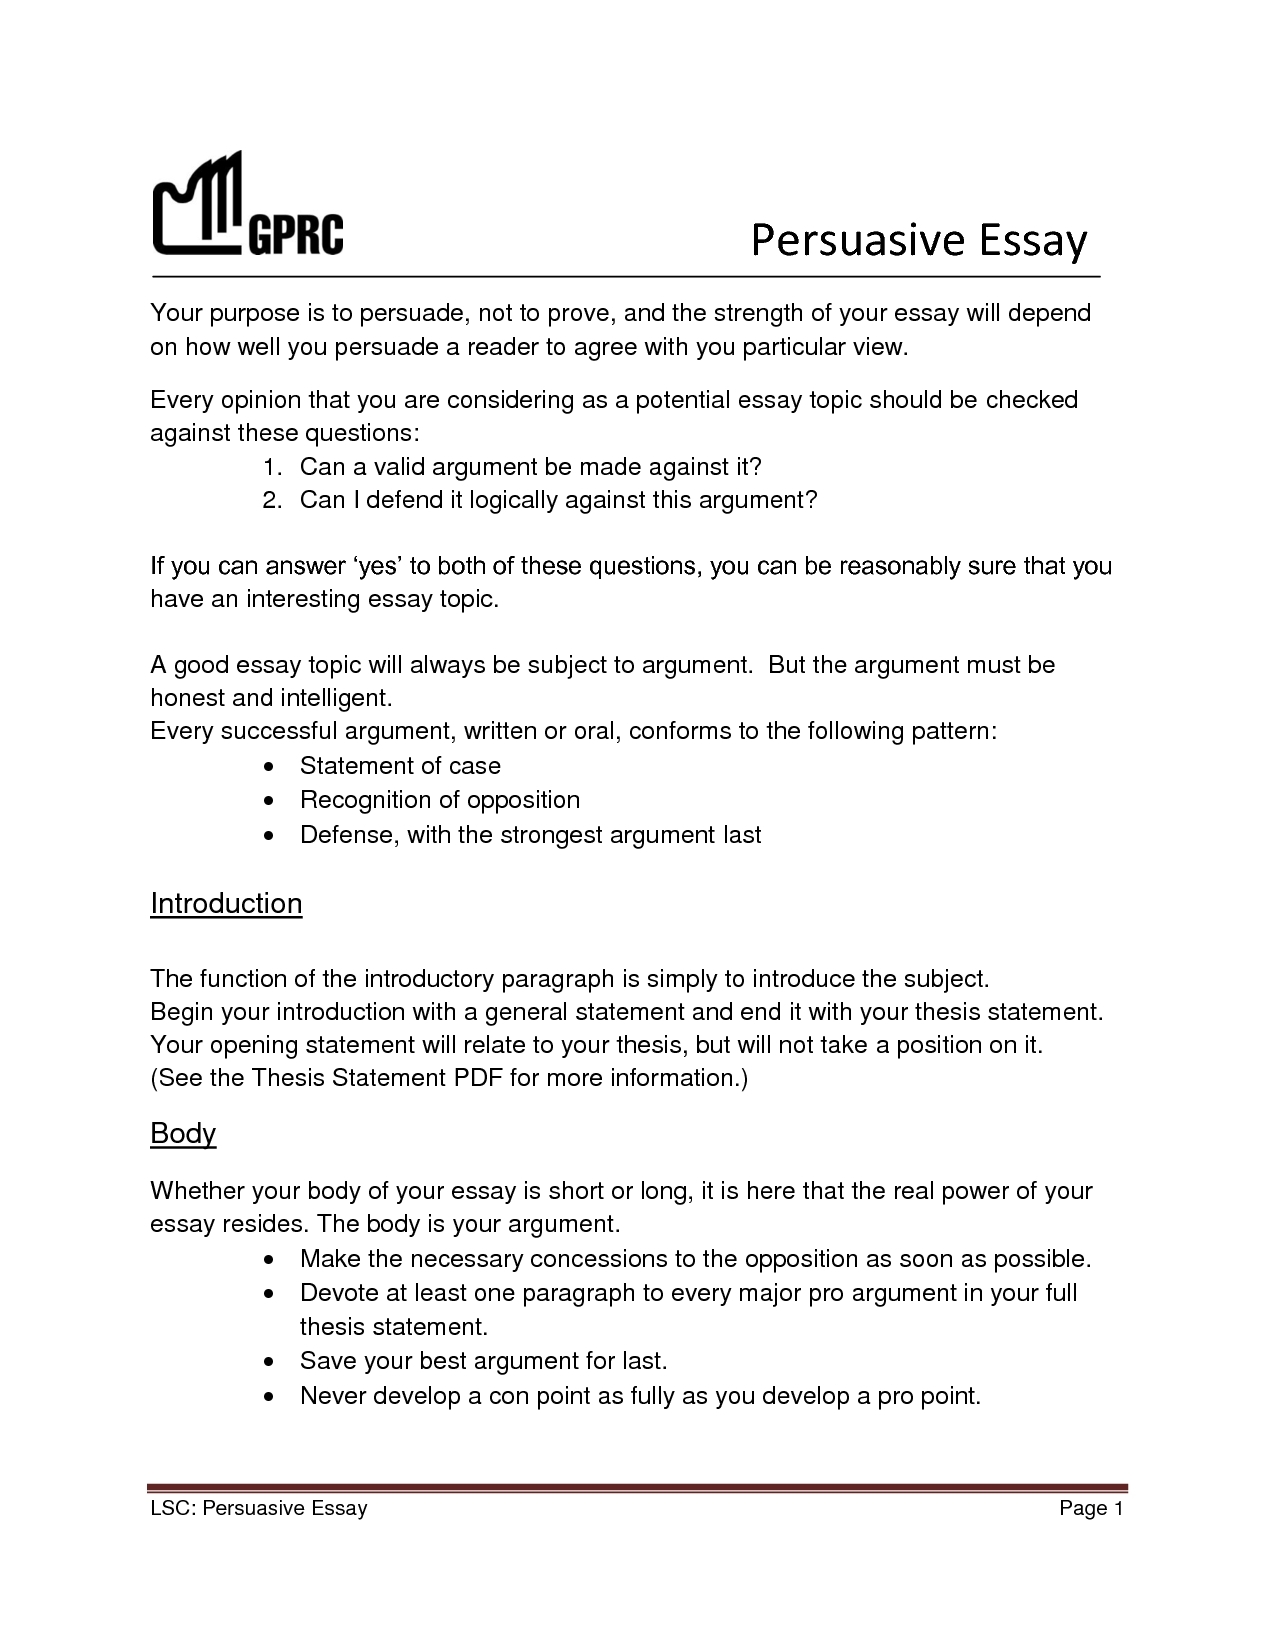 Persuassive essay ideas